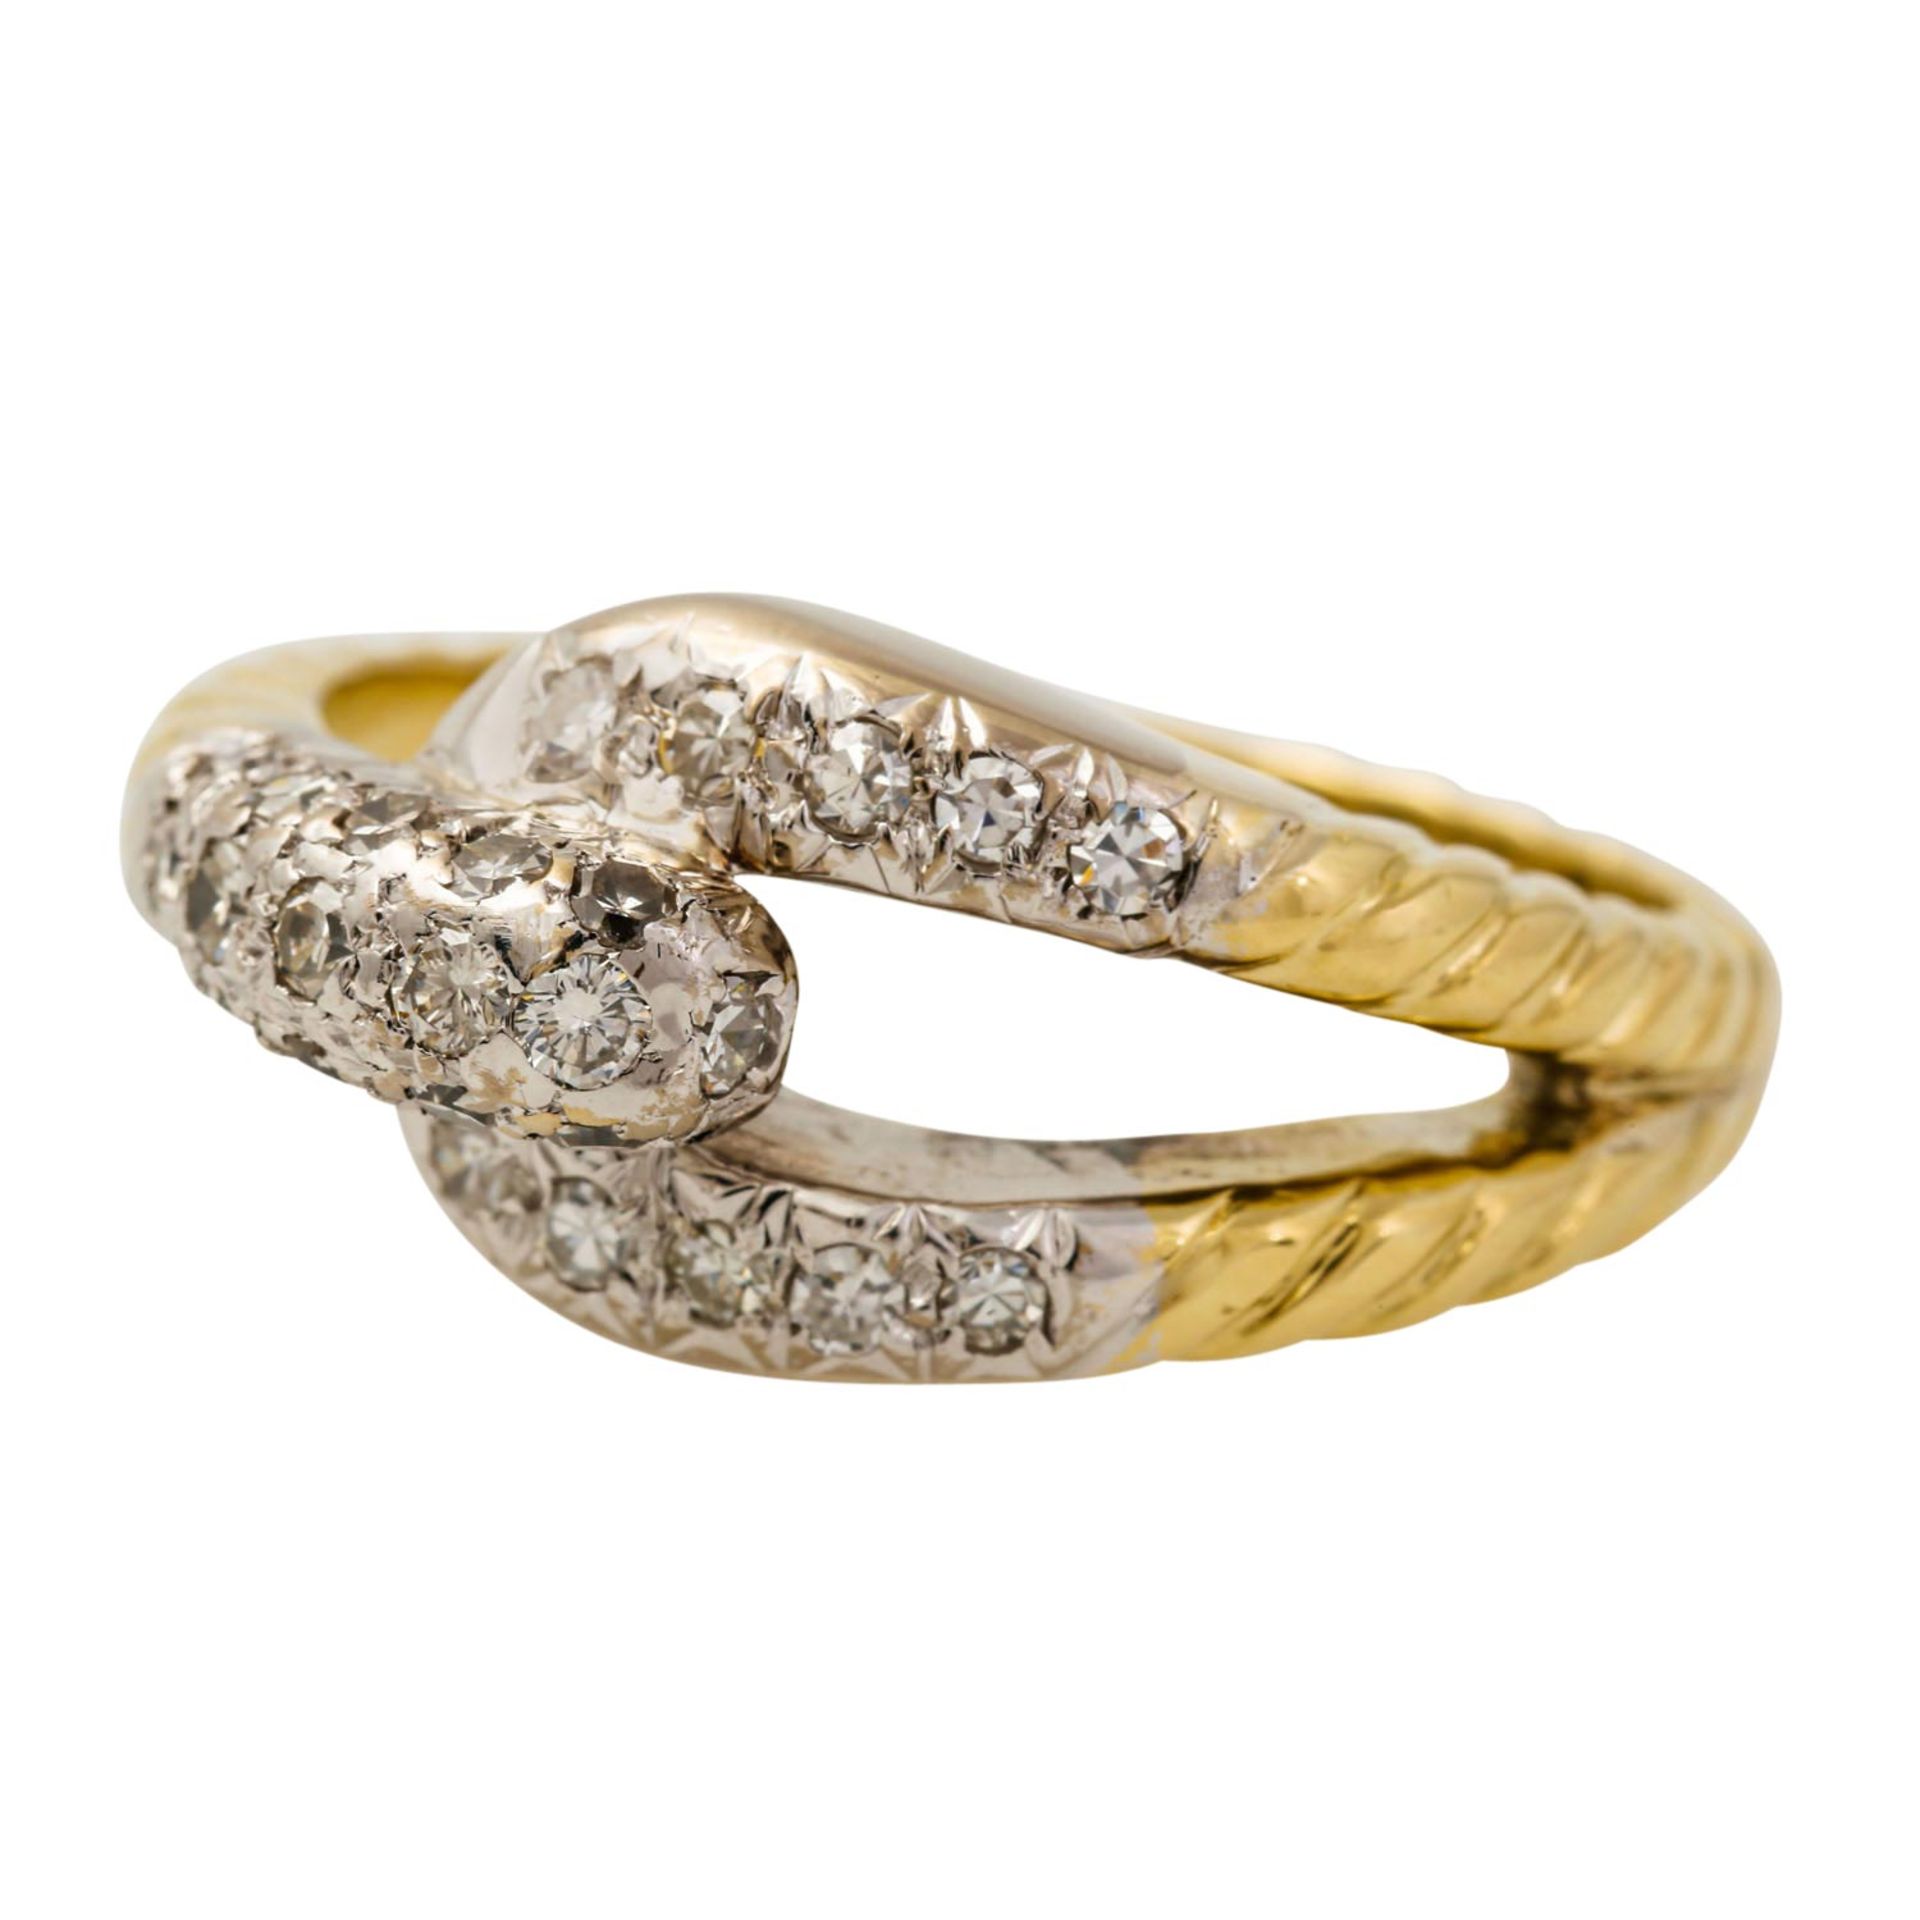 Ring mit Achtkantdiamanten zus. ca. 0,30 ct, gute Farbe u. Reinheit, GG 14K teilw. rho - Bild 5 aus 5